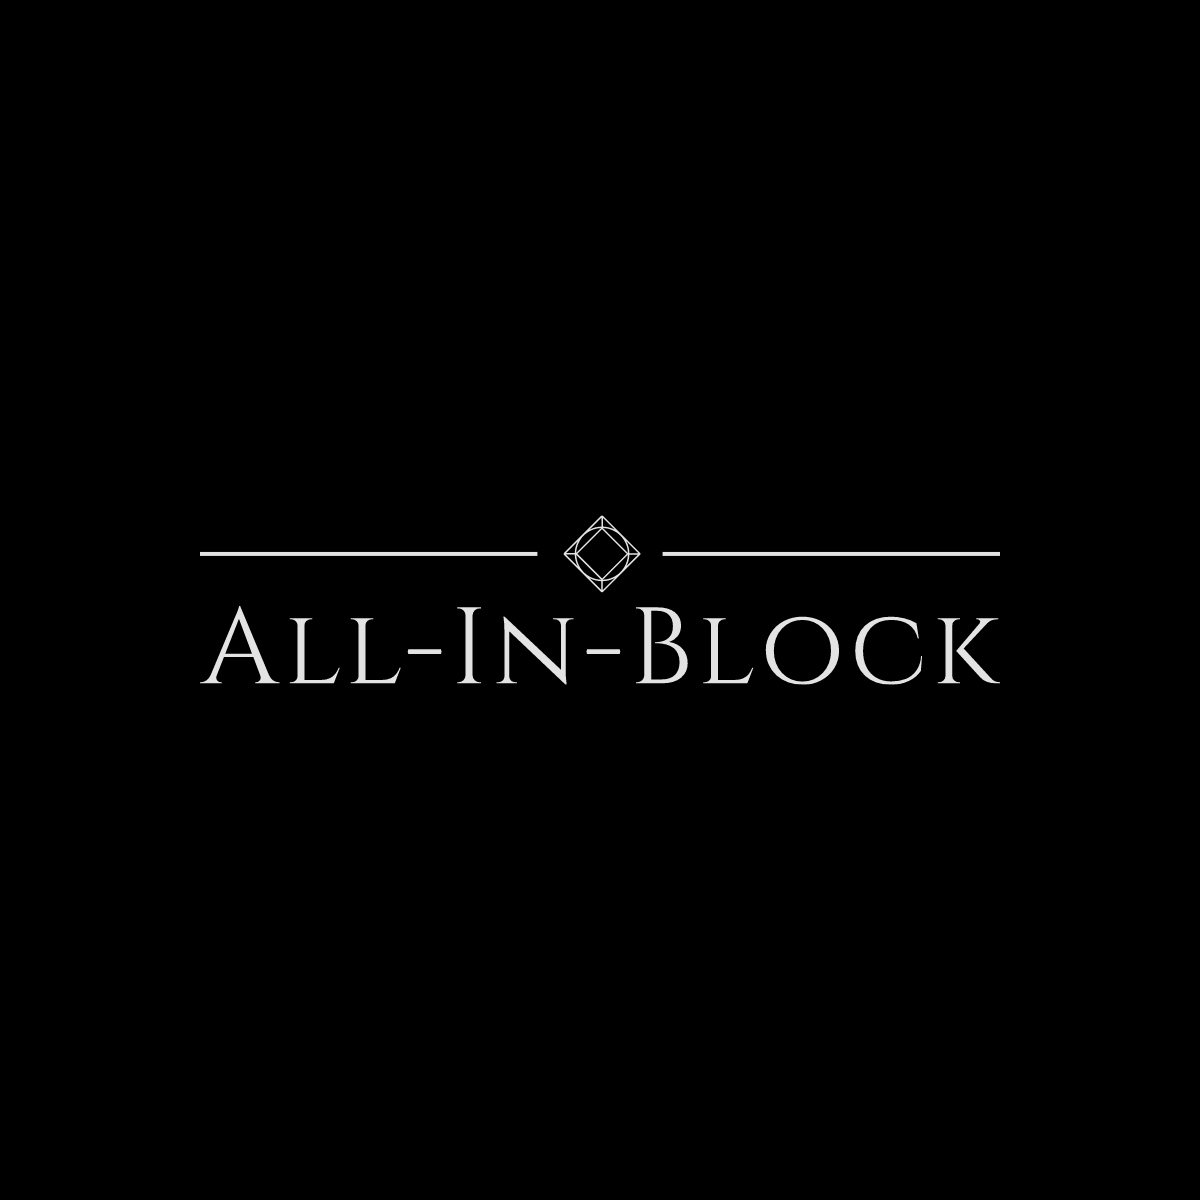 All-In-Block